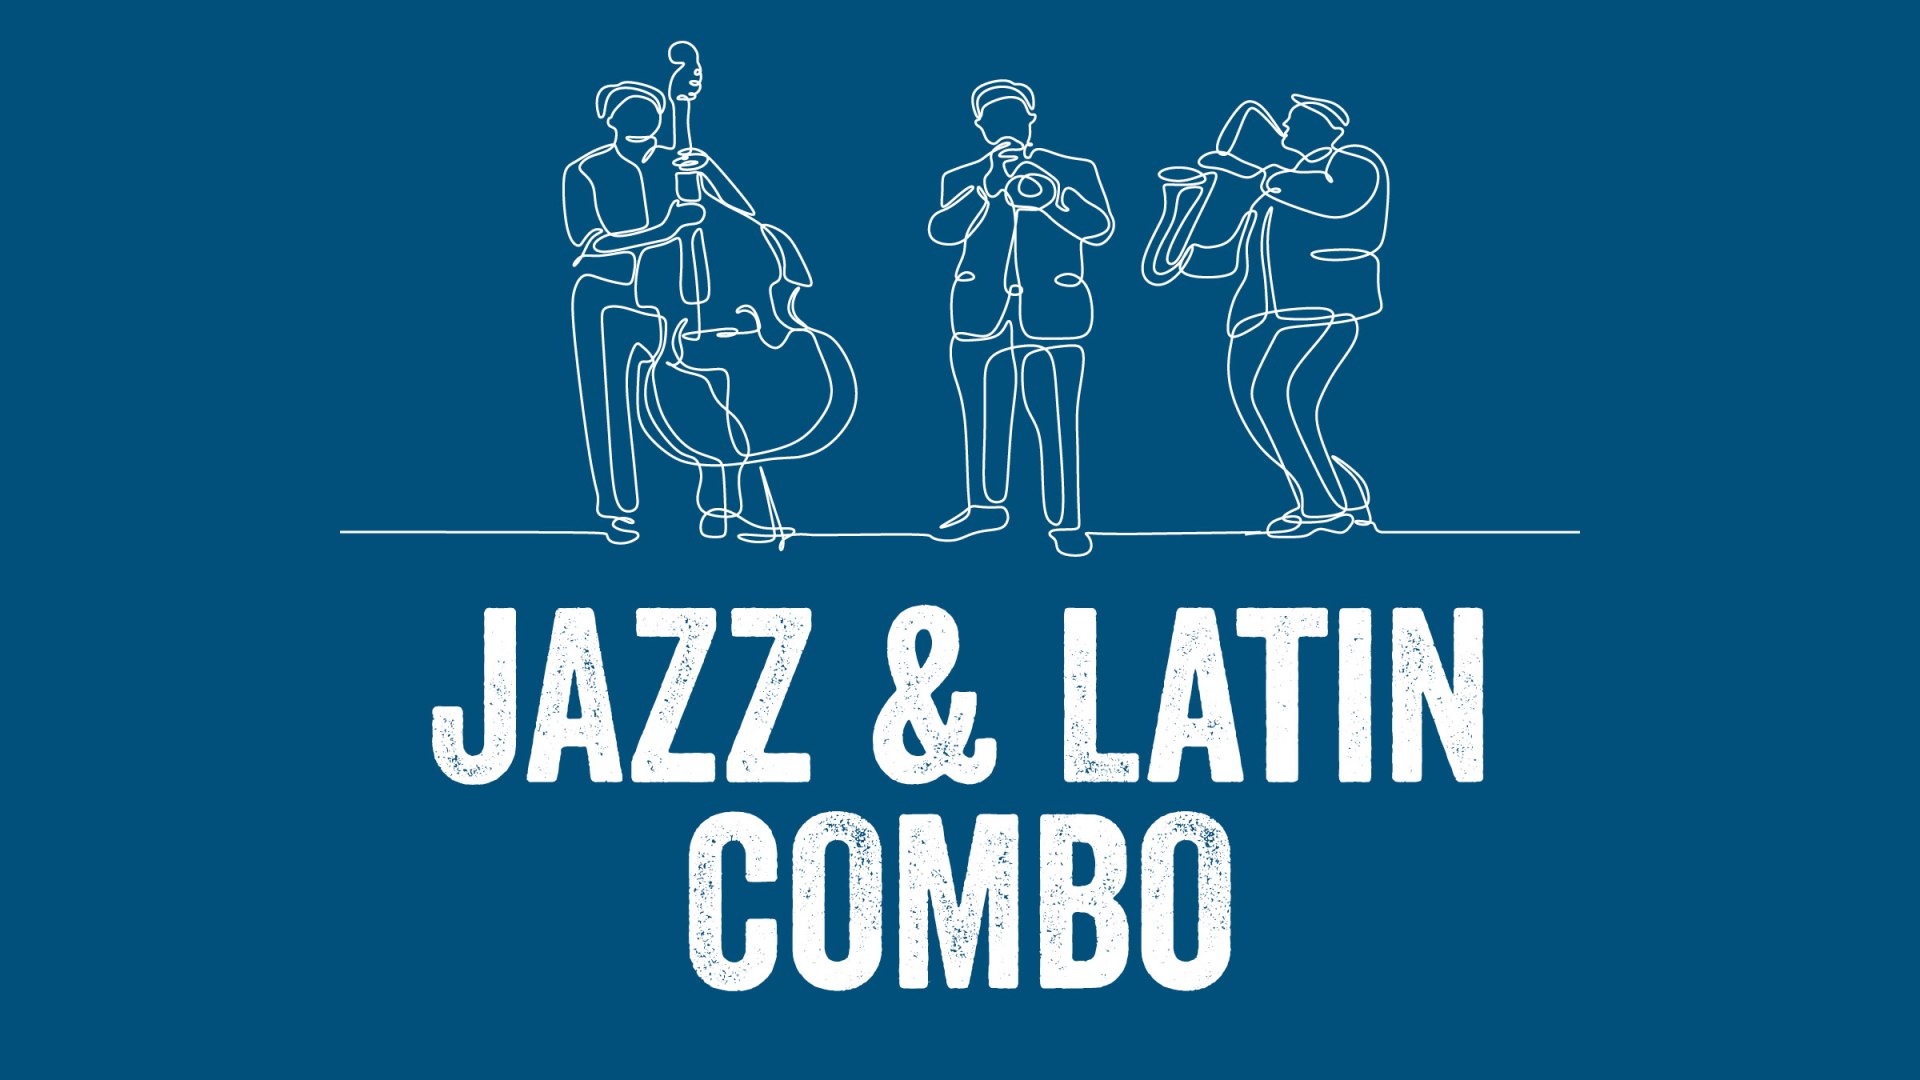 ttt_0321-sommerkonzerte-jazz-latin-donnerstag